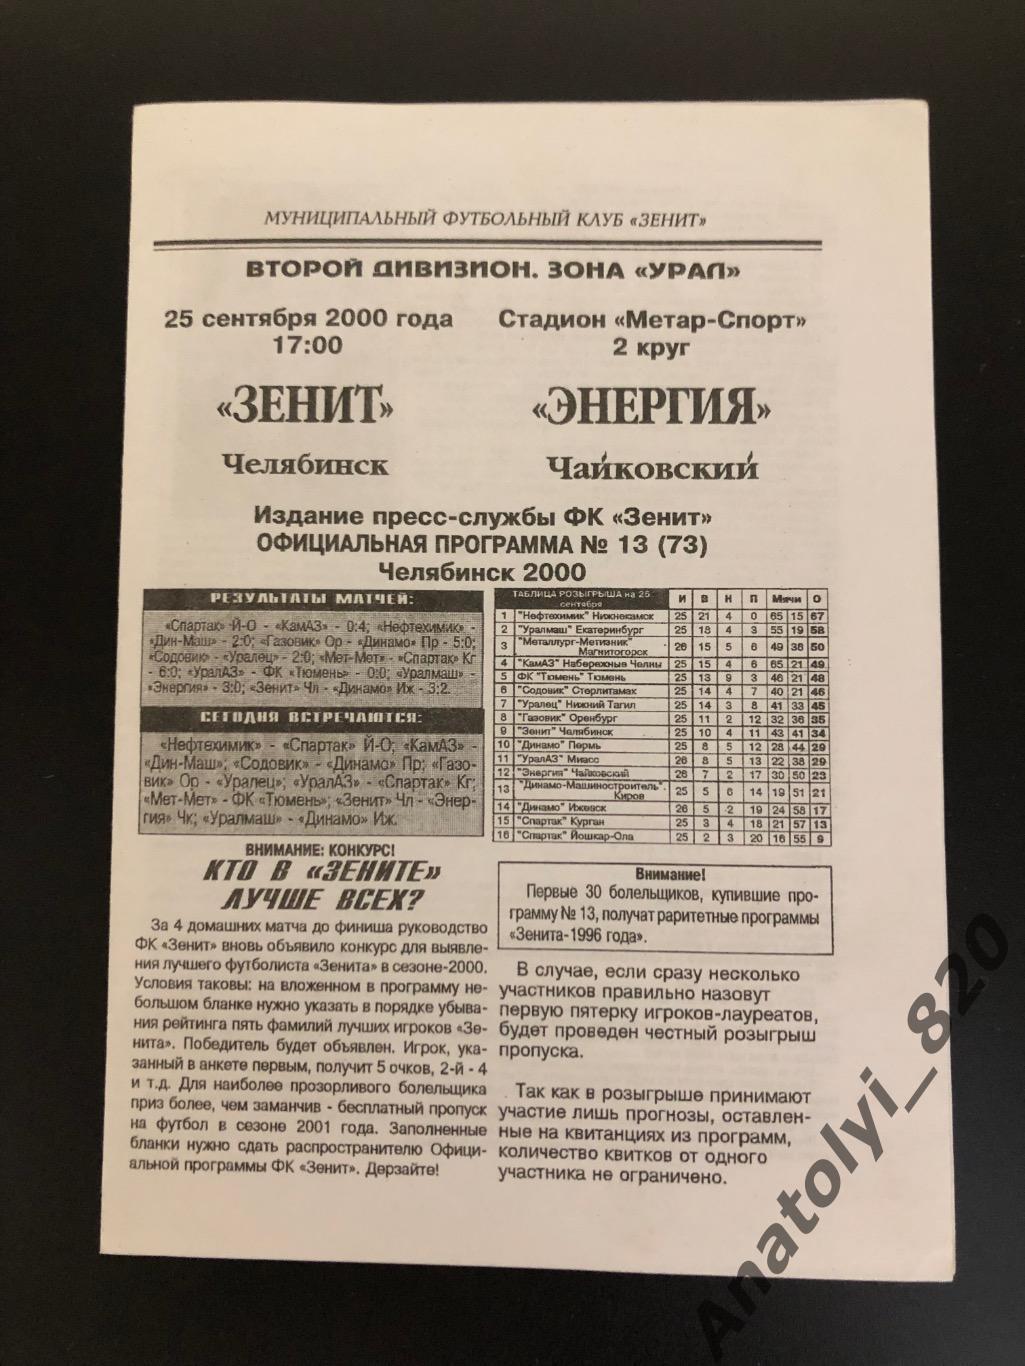 Зенит Челябинск - Энергия Чайковский, 25.09.2000